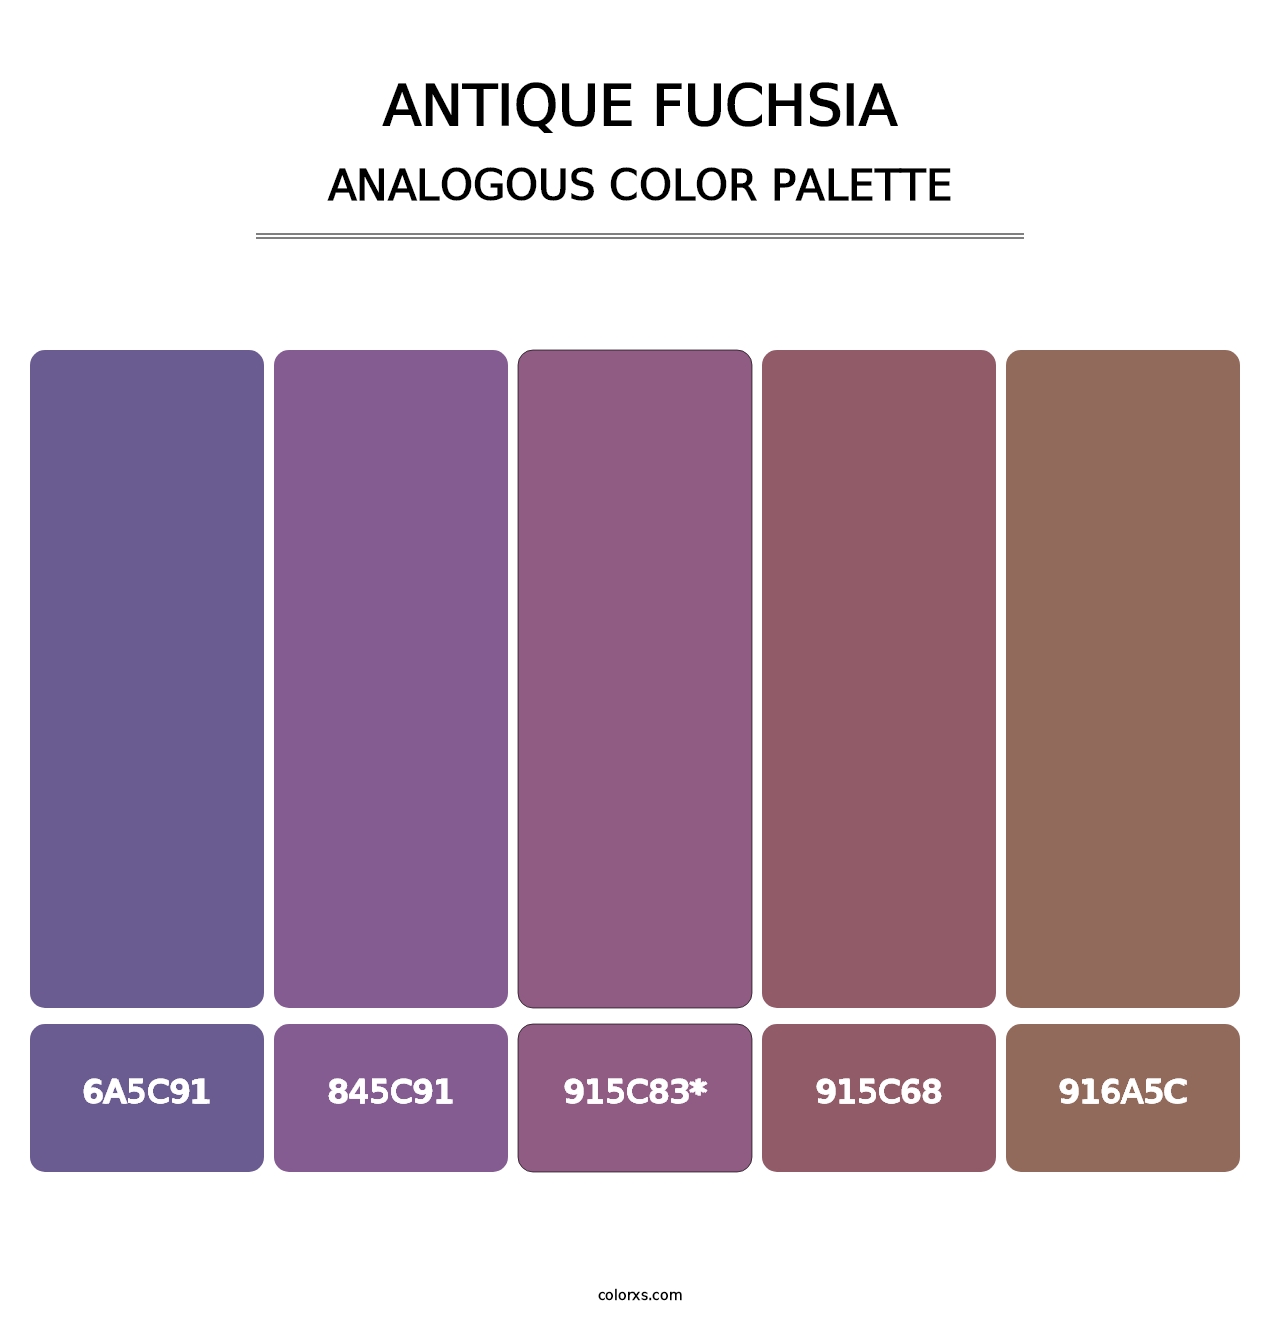 Antique Fuchsia - Analogous Color Palette